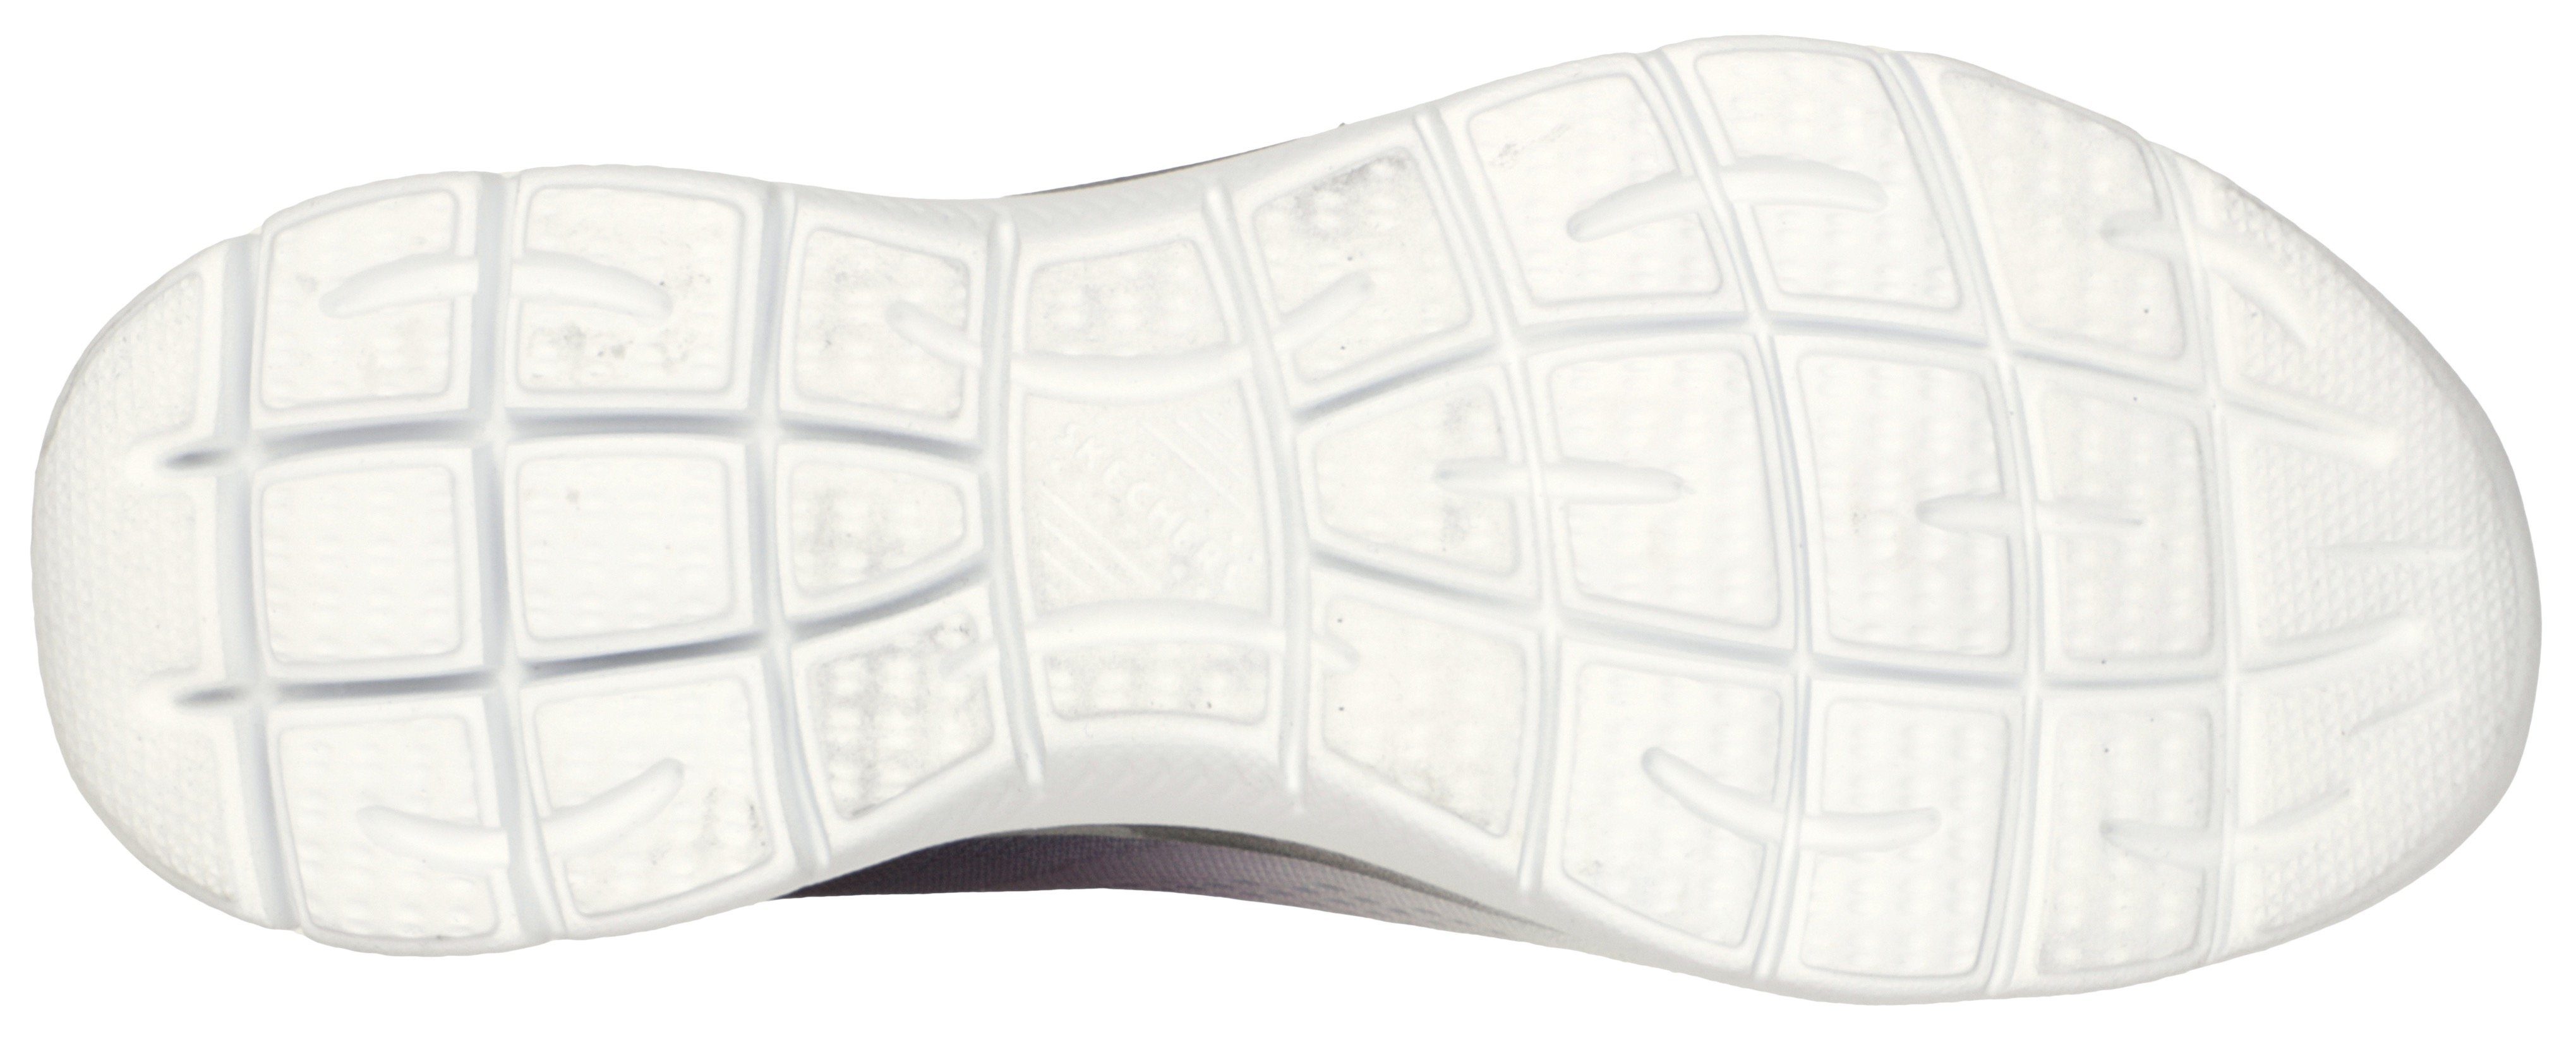 CHARMER Skechers Sneaker mit BRIGHT schwarz-weiß schönem Farbverlauf Slip-On SUMMITS